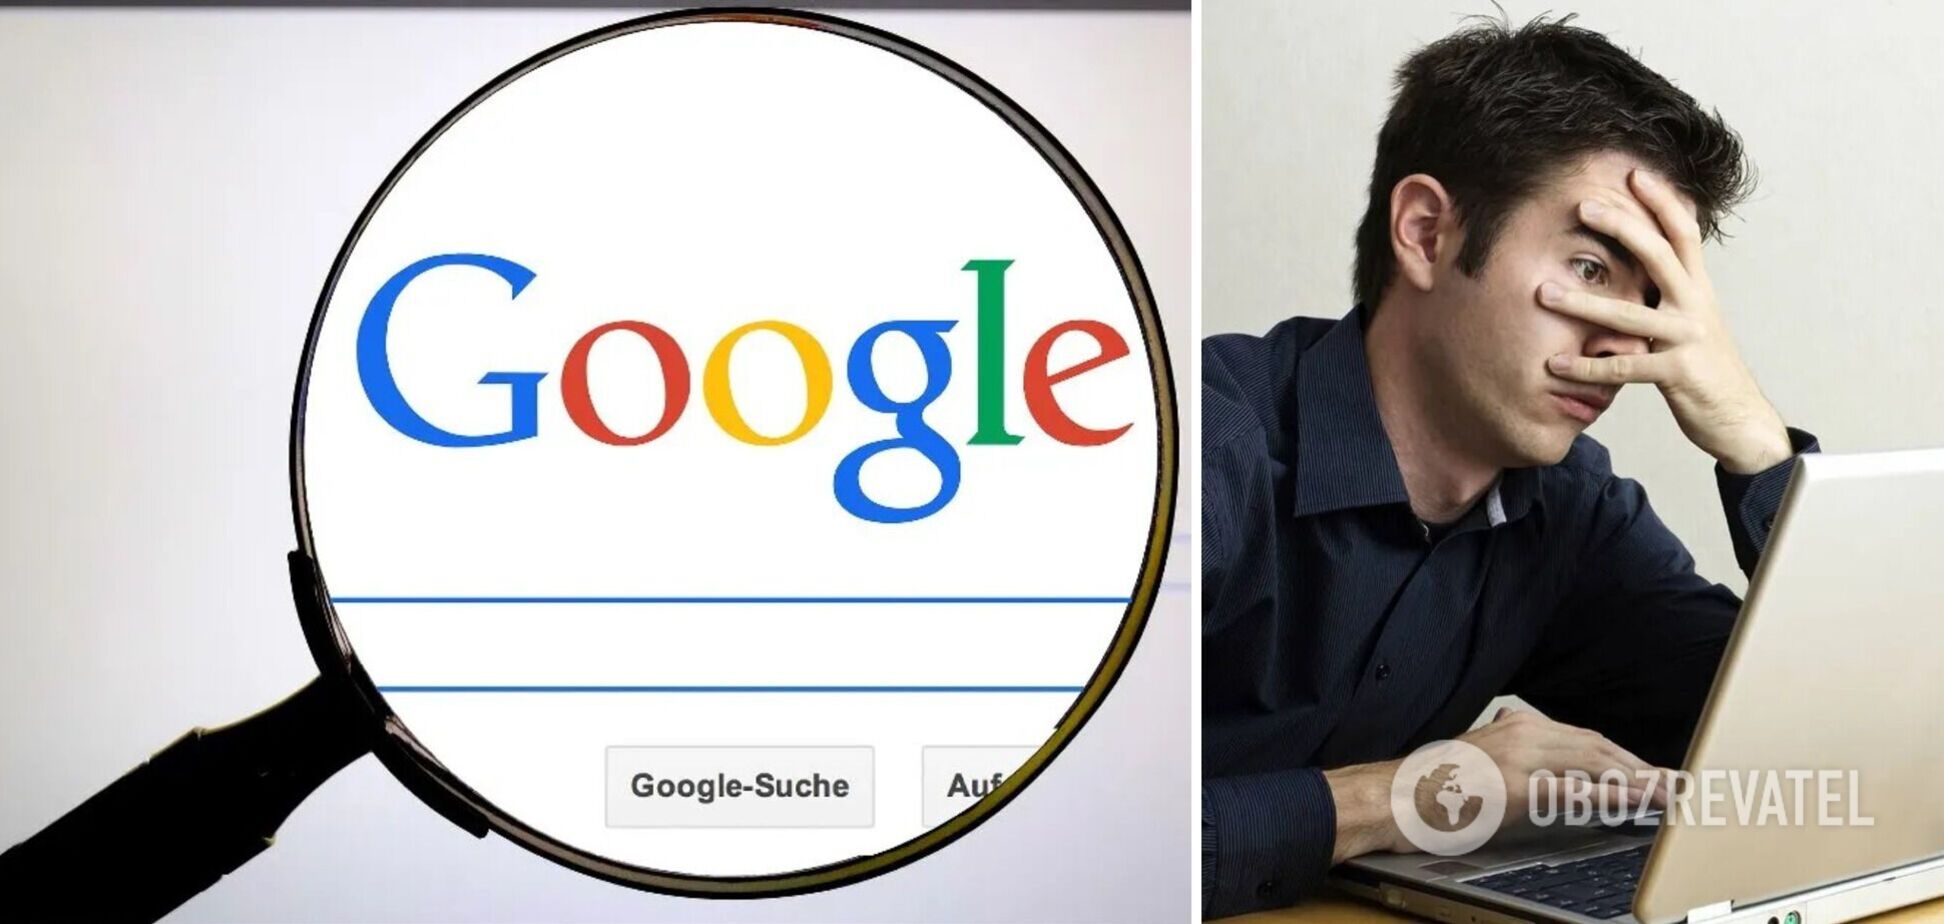 Как удалить конфиденциальную личную информацию из поиска Google: простой лайфхак